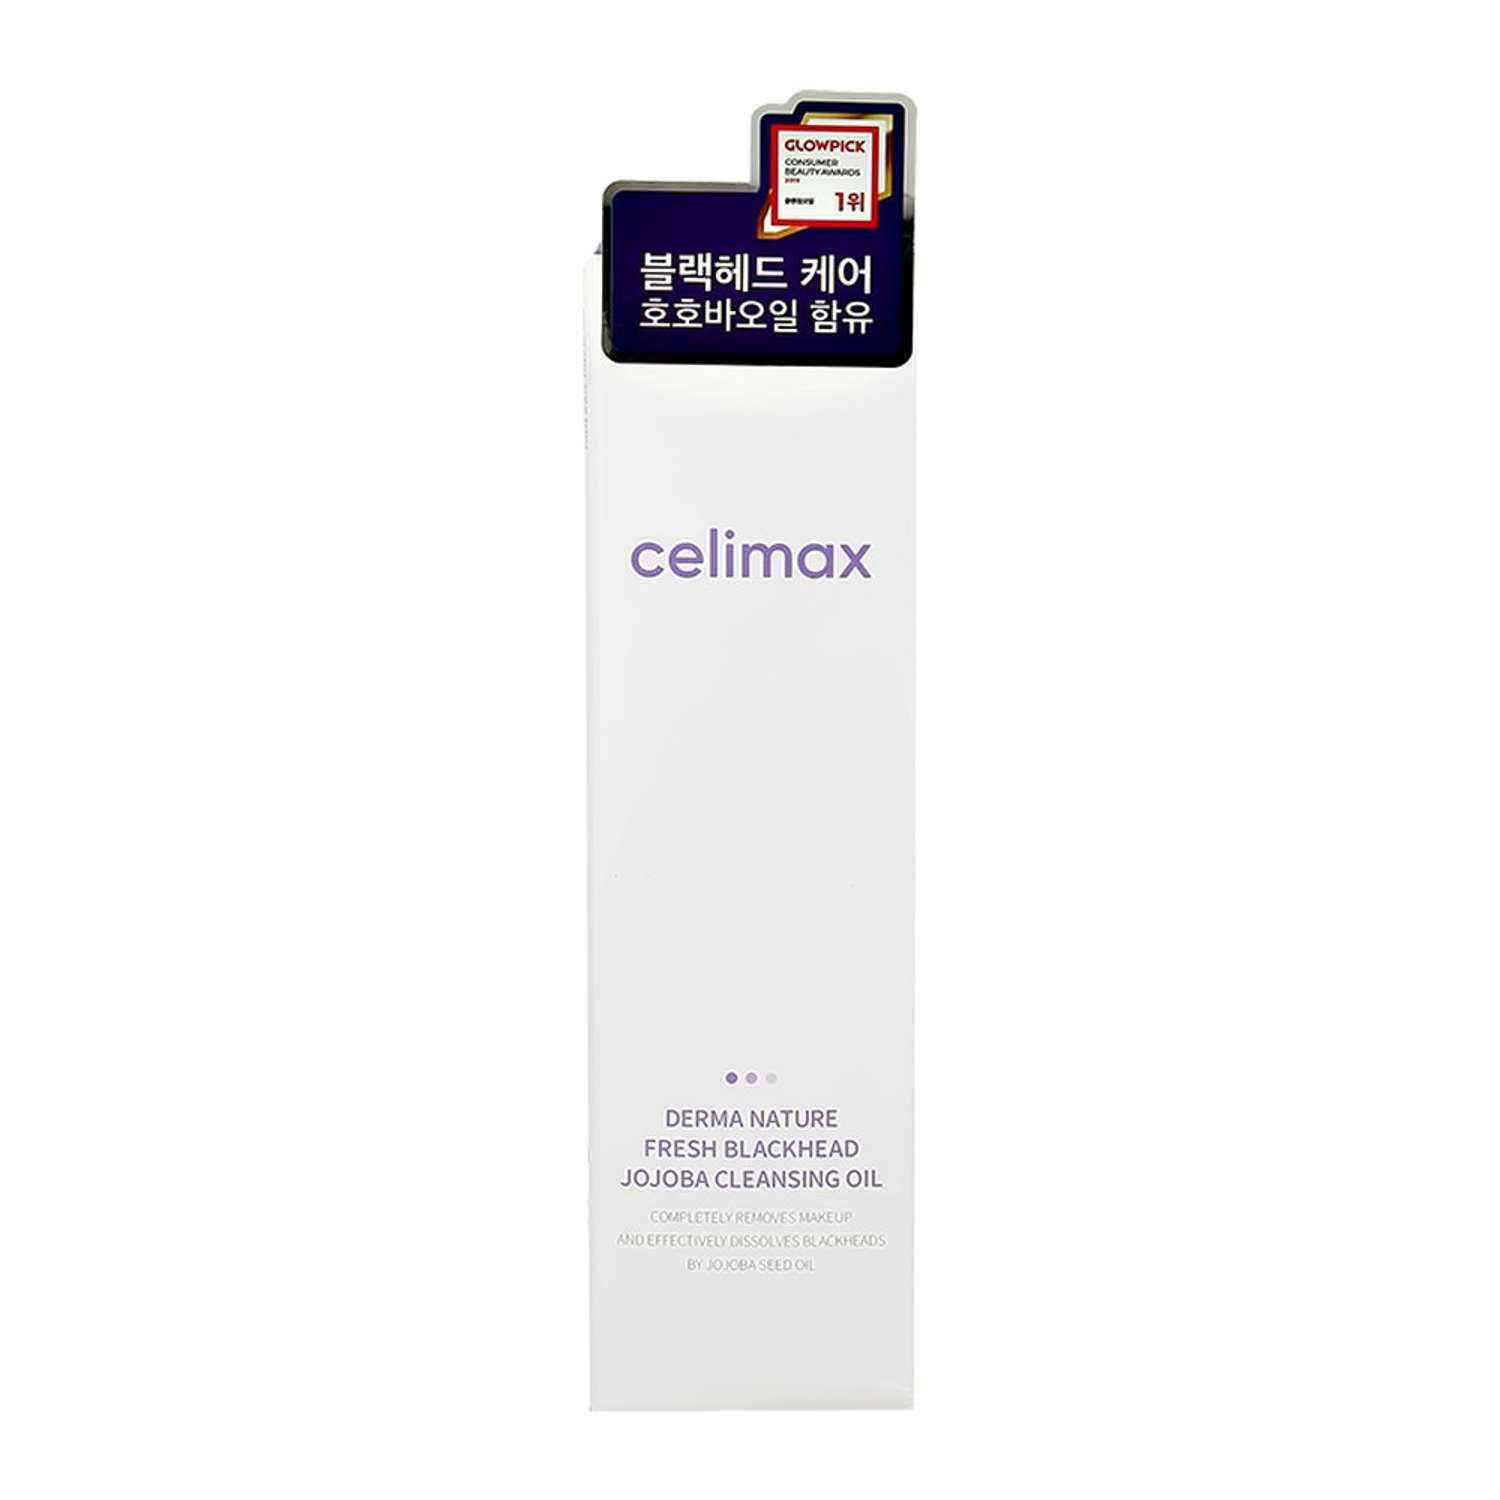 Гидрофильное масло Celimax с экстрактом жожоба 150 мл - фото 8